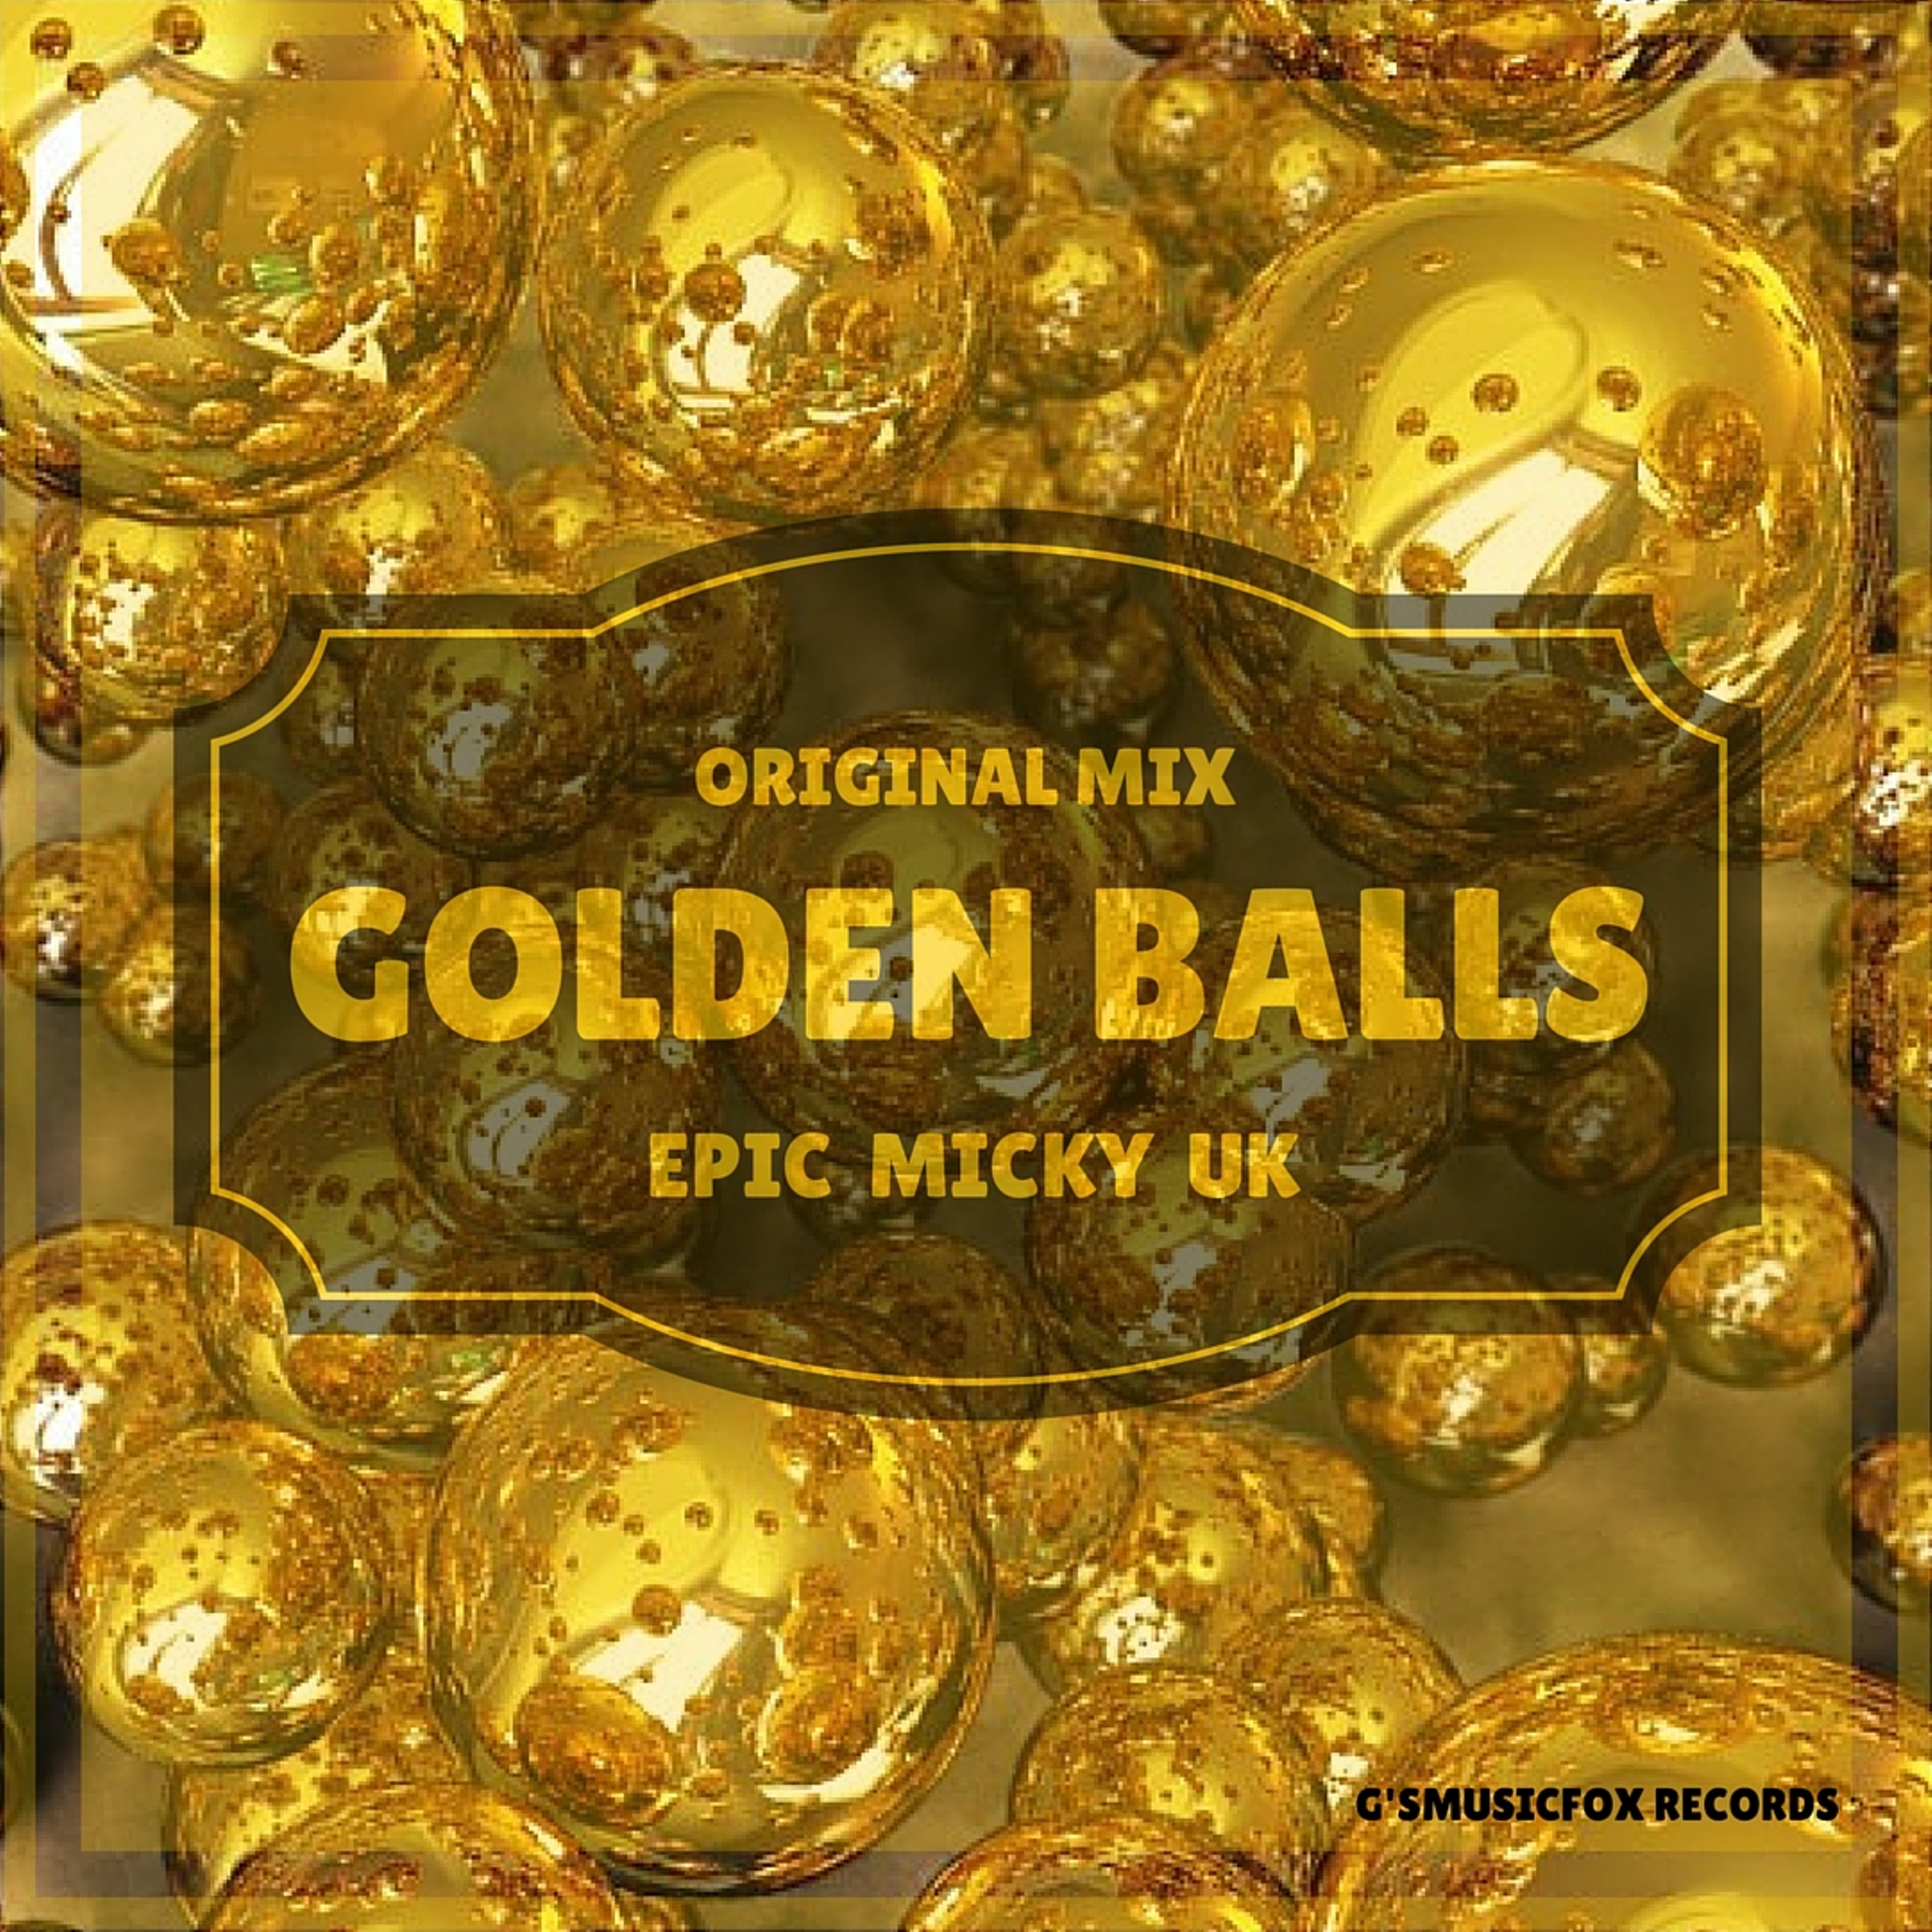 Original balling. Голден бол. Golden Mix Original. Репа Голден Болл. Оригинал песни balling.